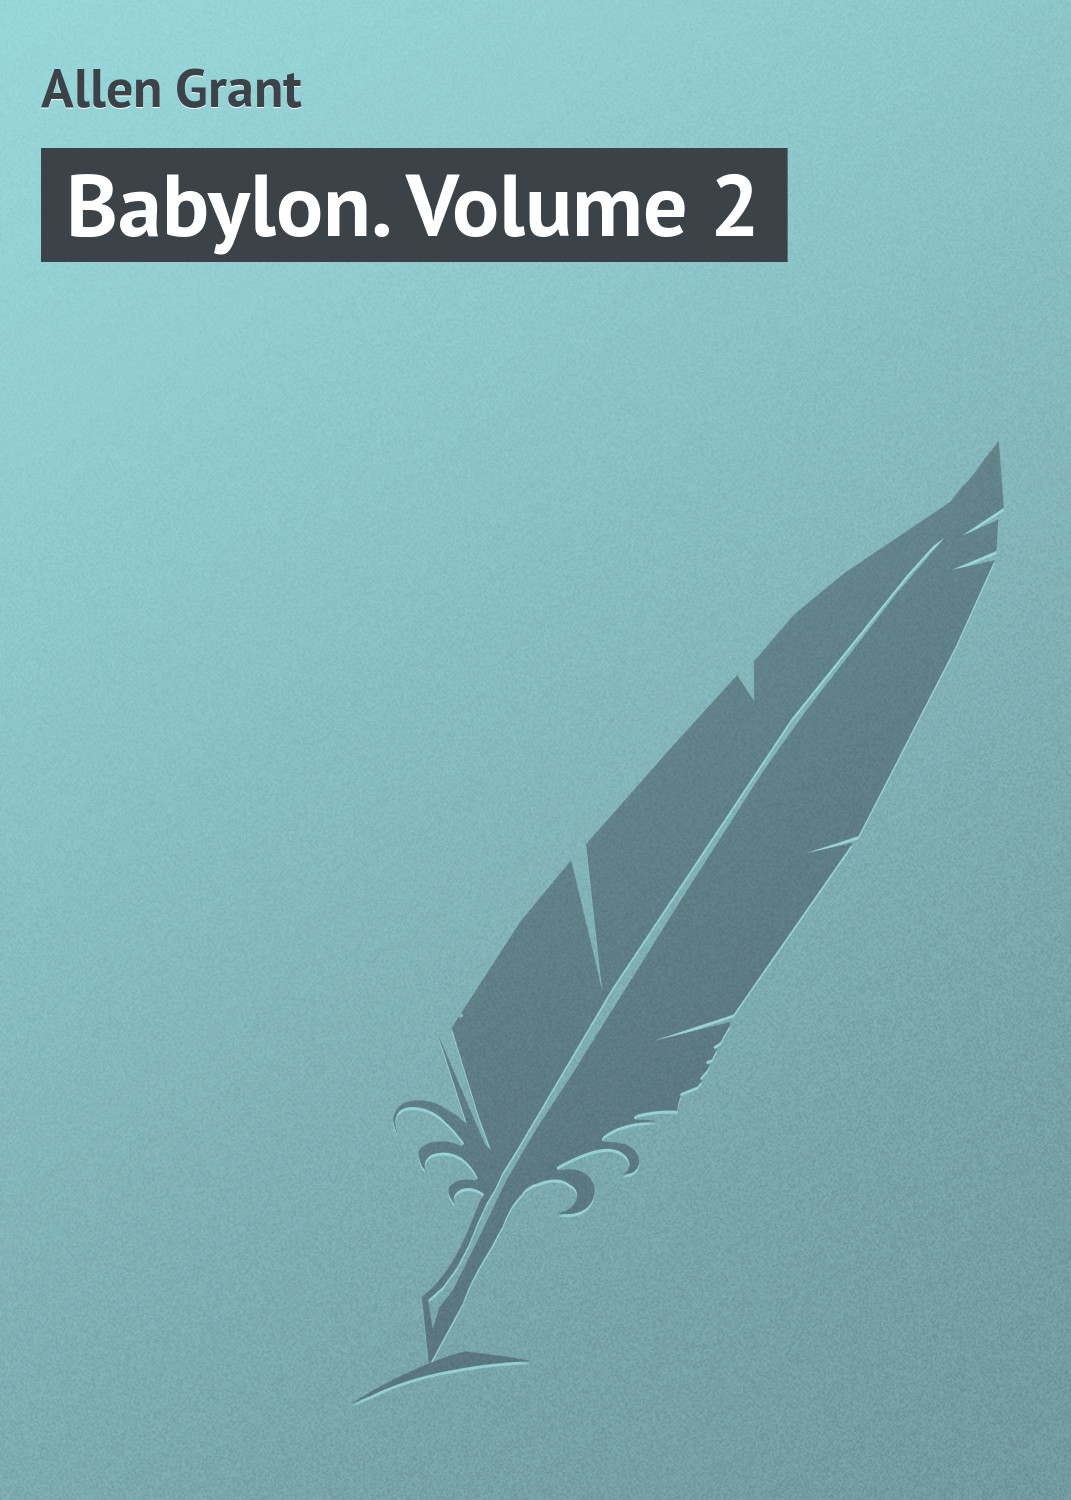 Книга Babylon. Volume 2 из серии , созданная Grant Allen, может относится к жанру Зарубежная классика. Стоимость электронной книги Babylon. Volume 2 с идентификатором 23164763 составляет 5.99 руб.